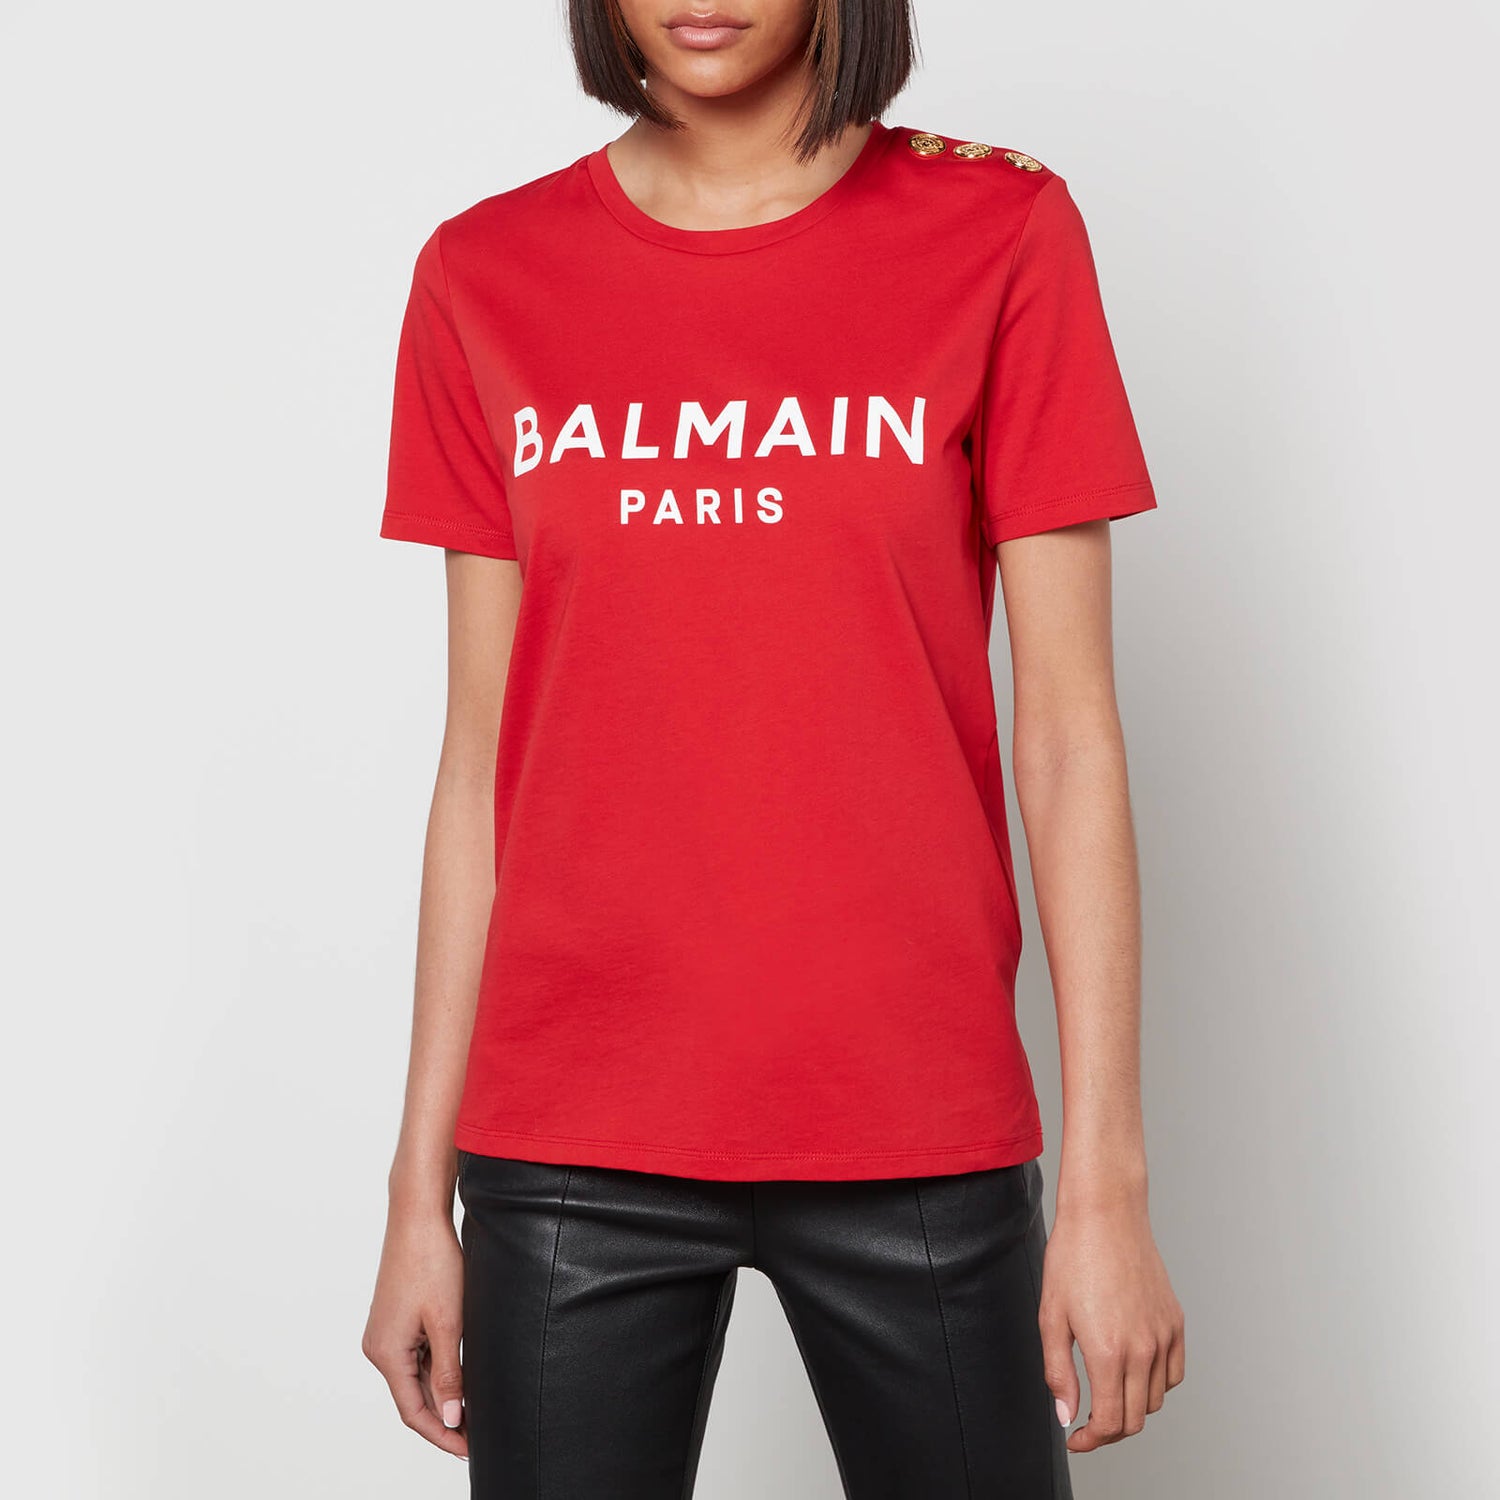 Balmain Women's Short Sleeve 3 Button Printed Balmain T-Shirt - Rouge/Blanc - XS